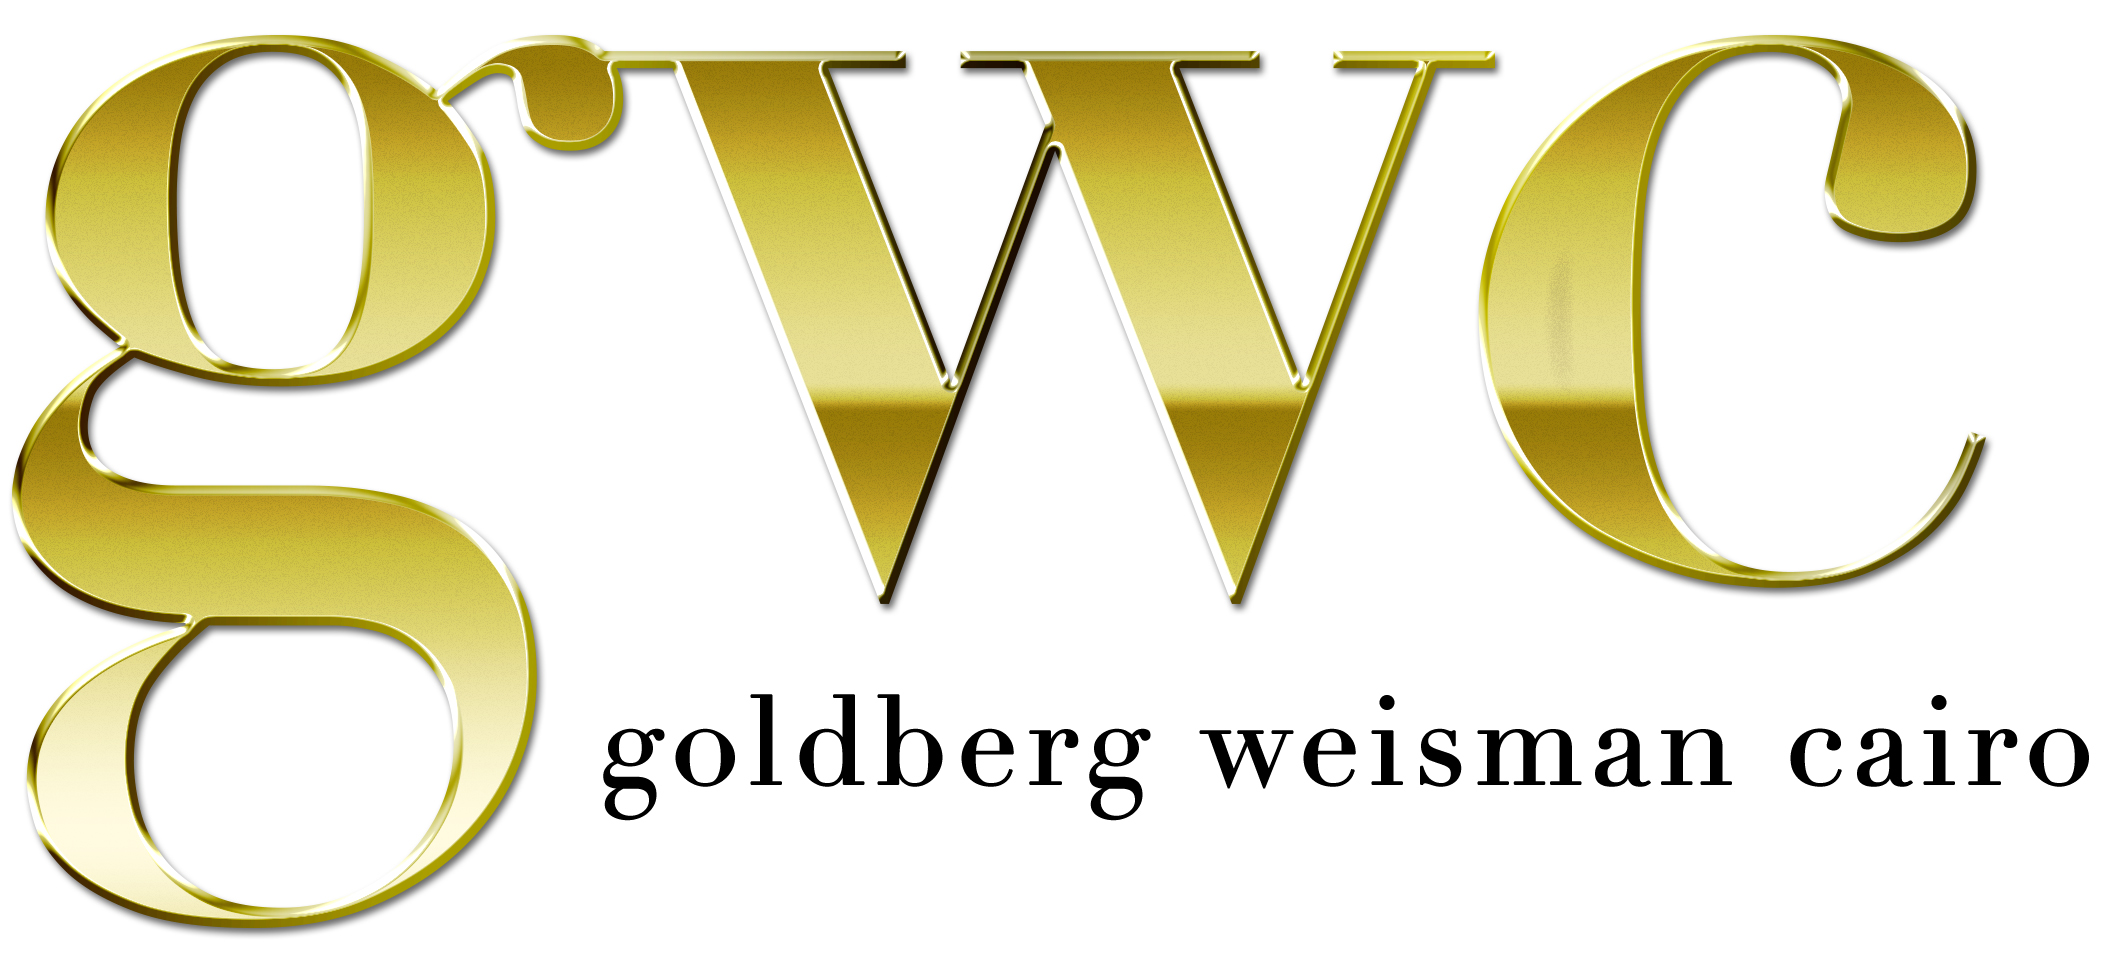 goldberg weisman cairo logo